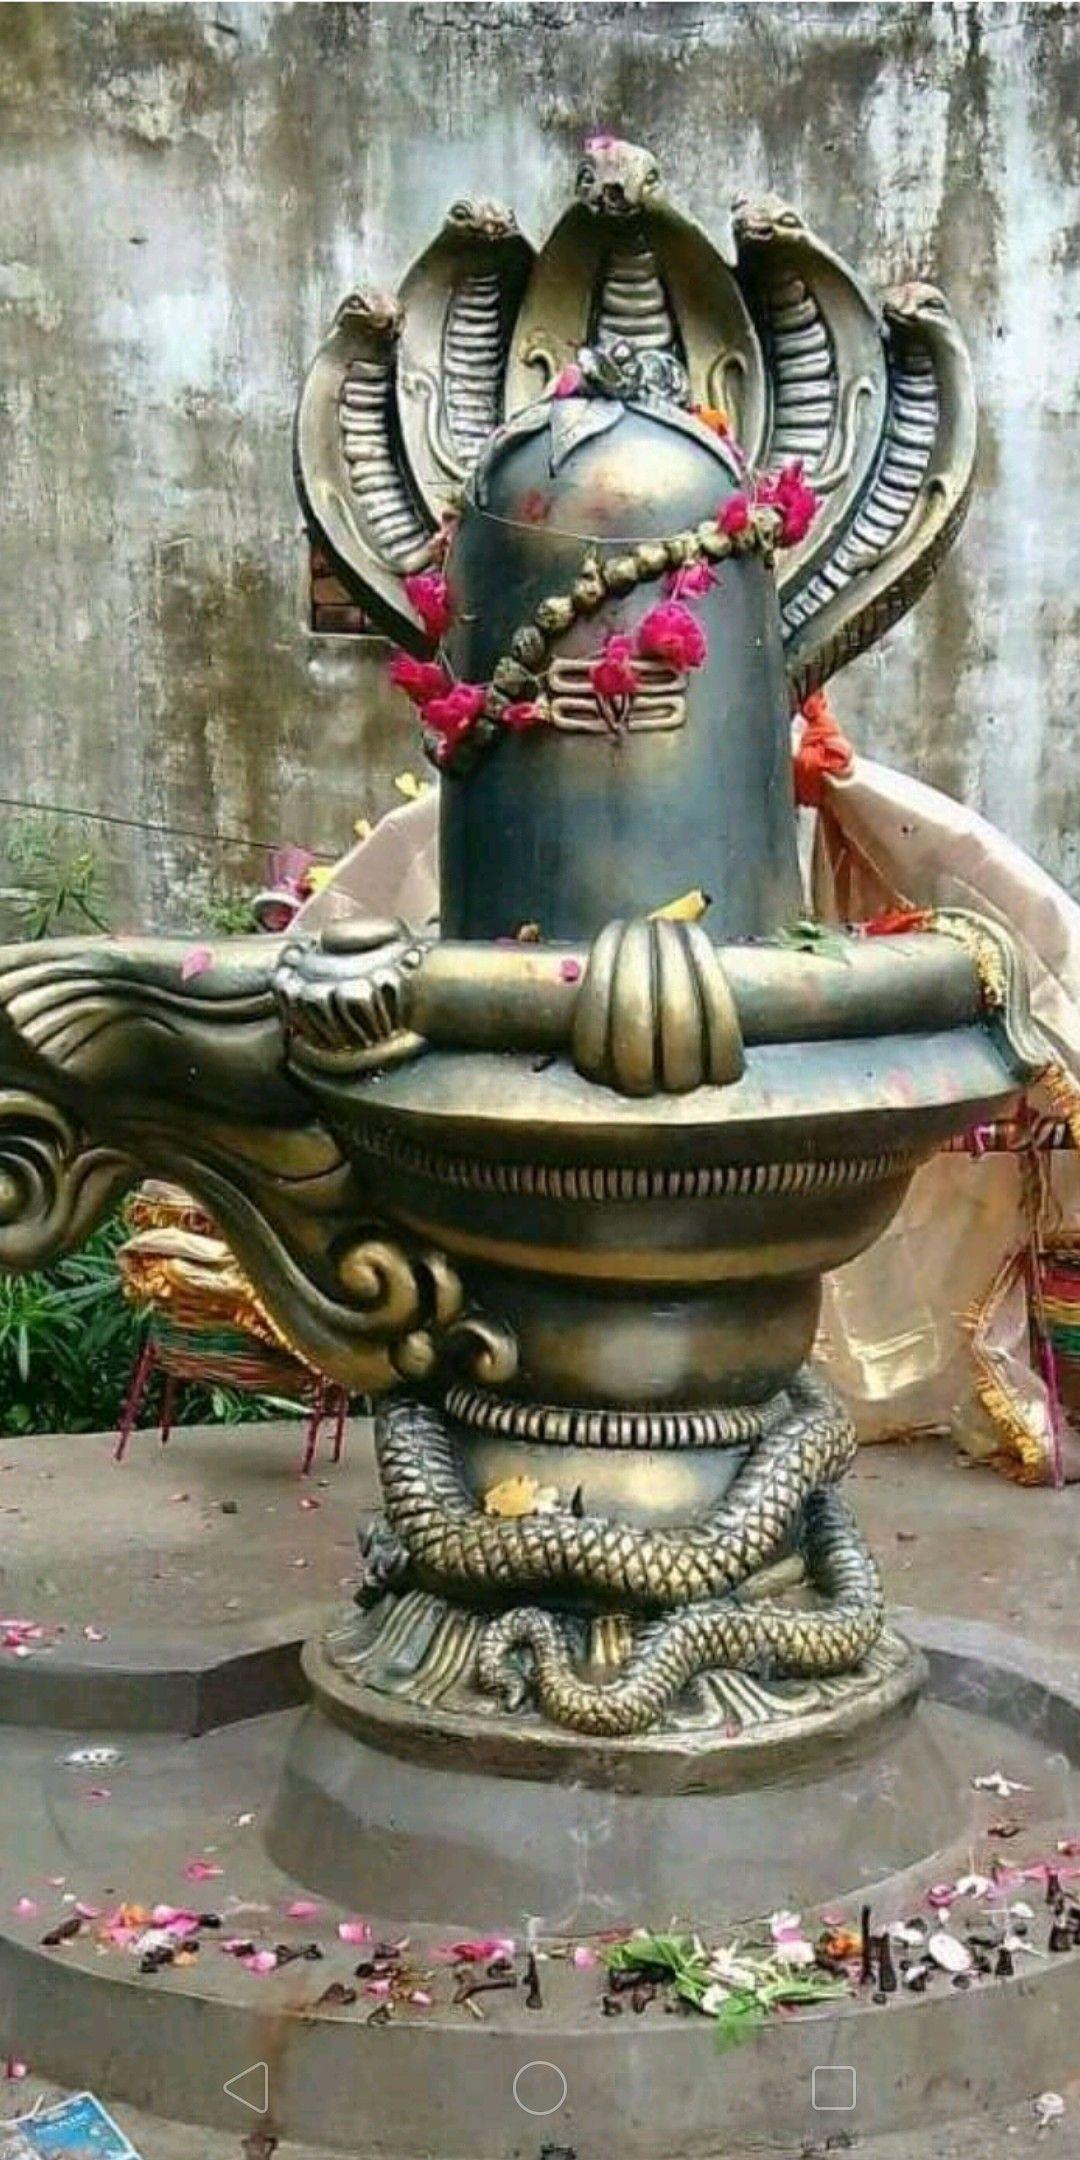 Om Namah Shivaya. Lord shiva. Shiva lord